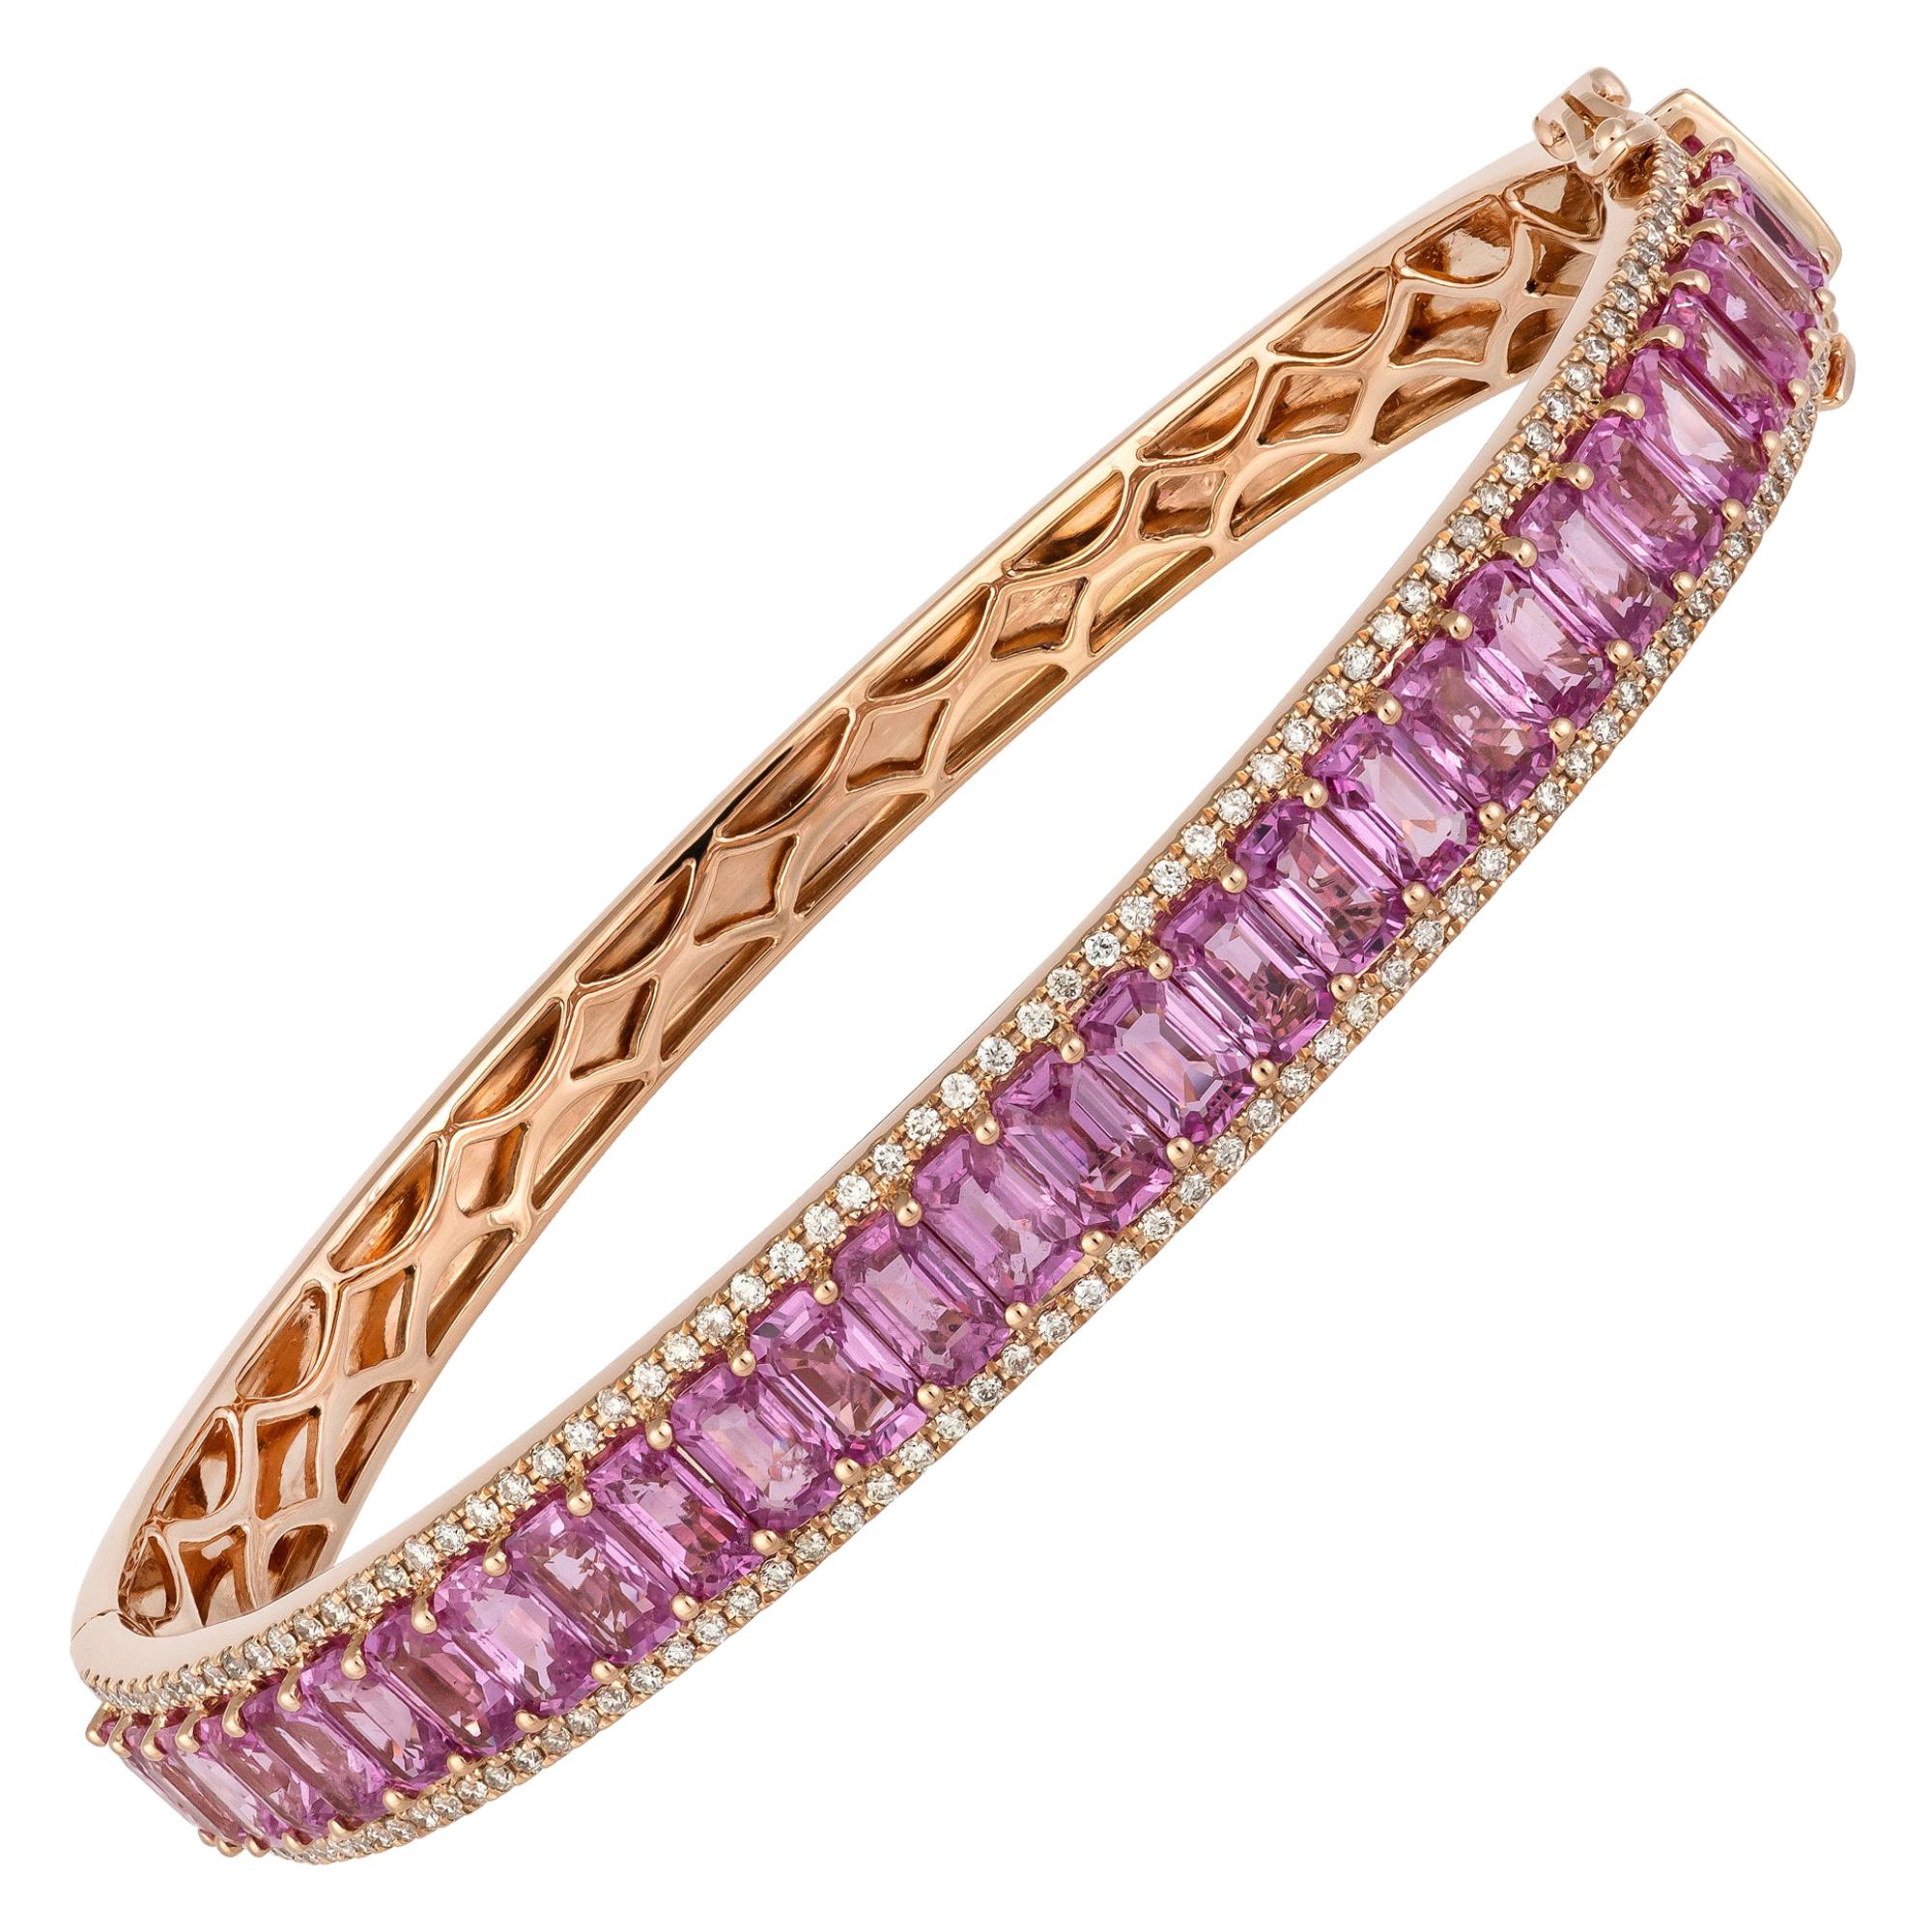 Bracelet tennis en or rose 18 carats avec diamants 0,77 ct/130 Pcs Ps 8,88